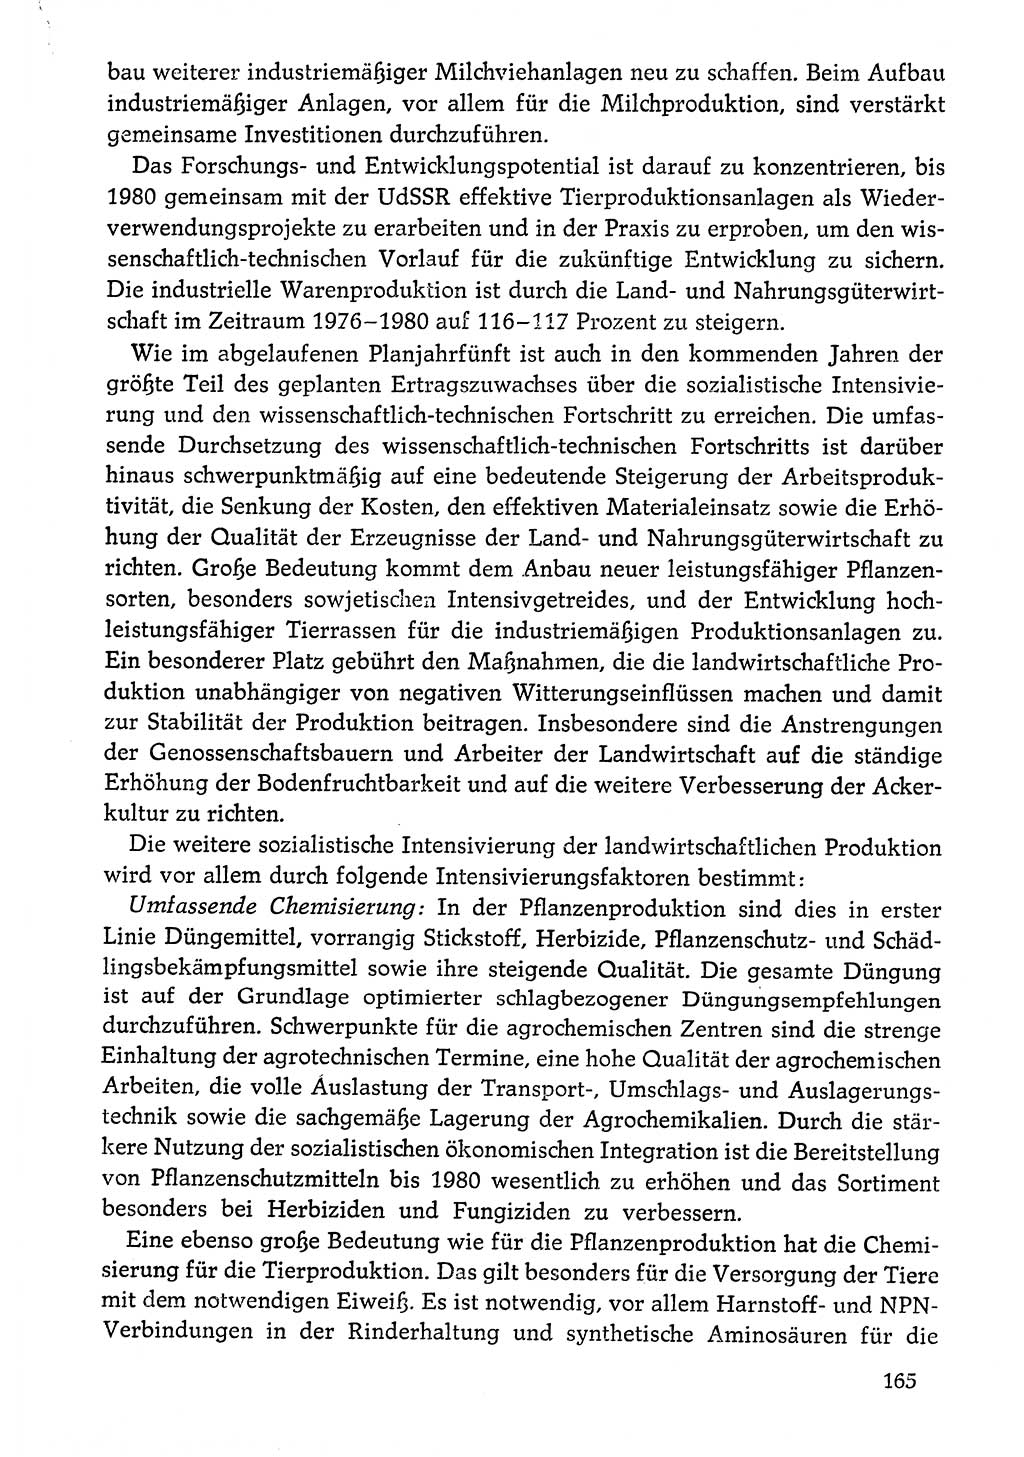 Dokumente der Sozialistischen Einheitspartei Deutschlands (SED) [Deutsche Demokratische Republik (DDR)] 1976-1977, Seite 165 (Dok. SED DDR 1976-1977, S. 165)